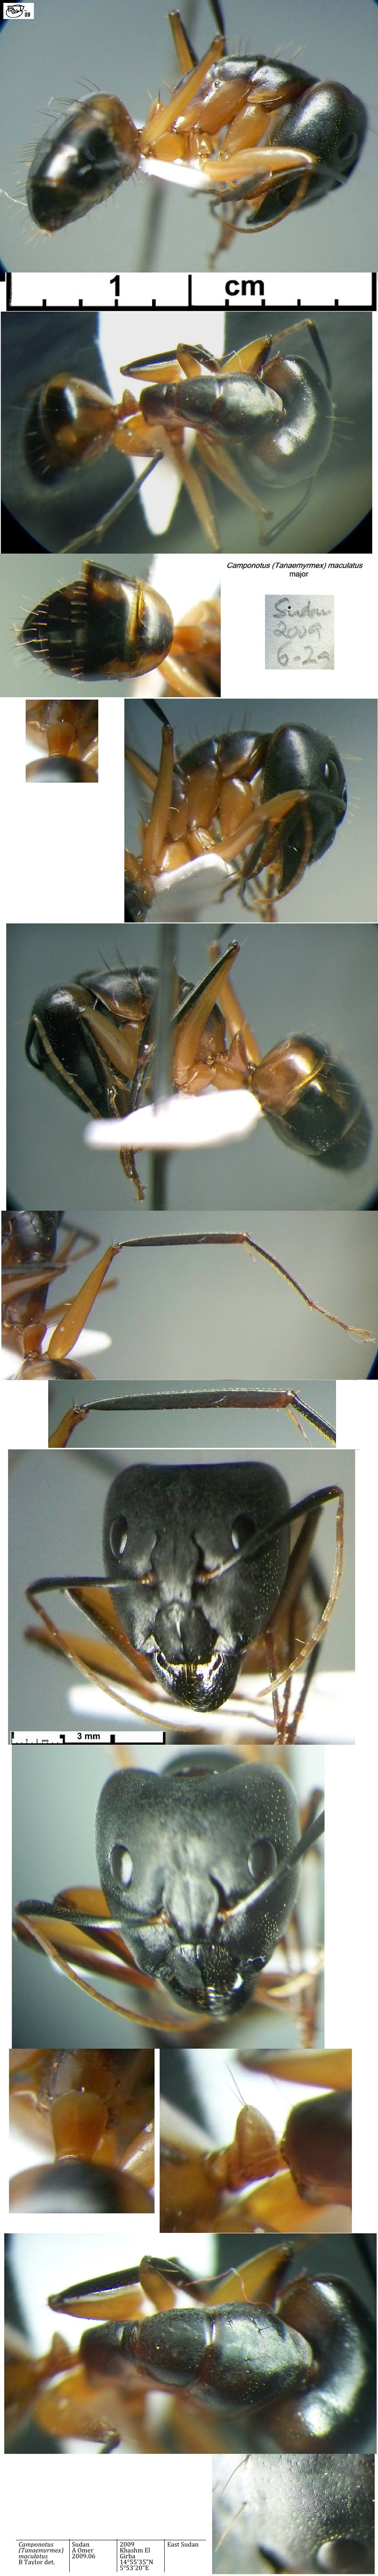 {Camponotus maculatus major Sudan}